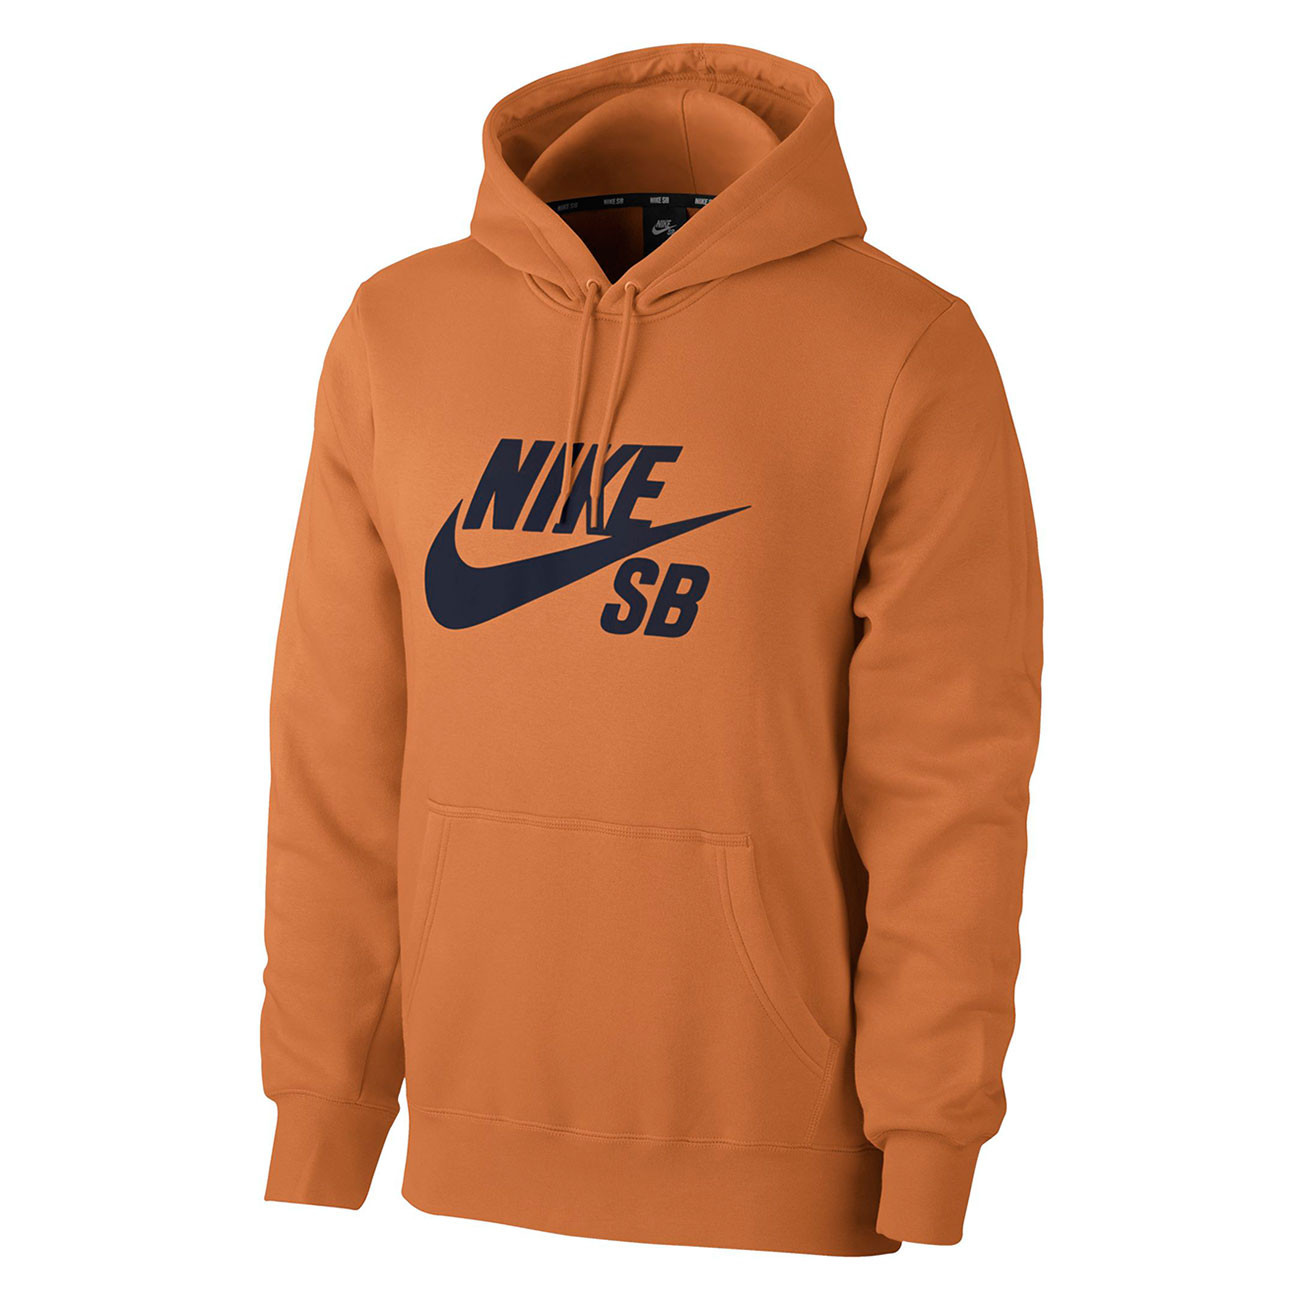 orange nike sb hoodie